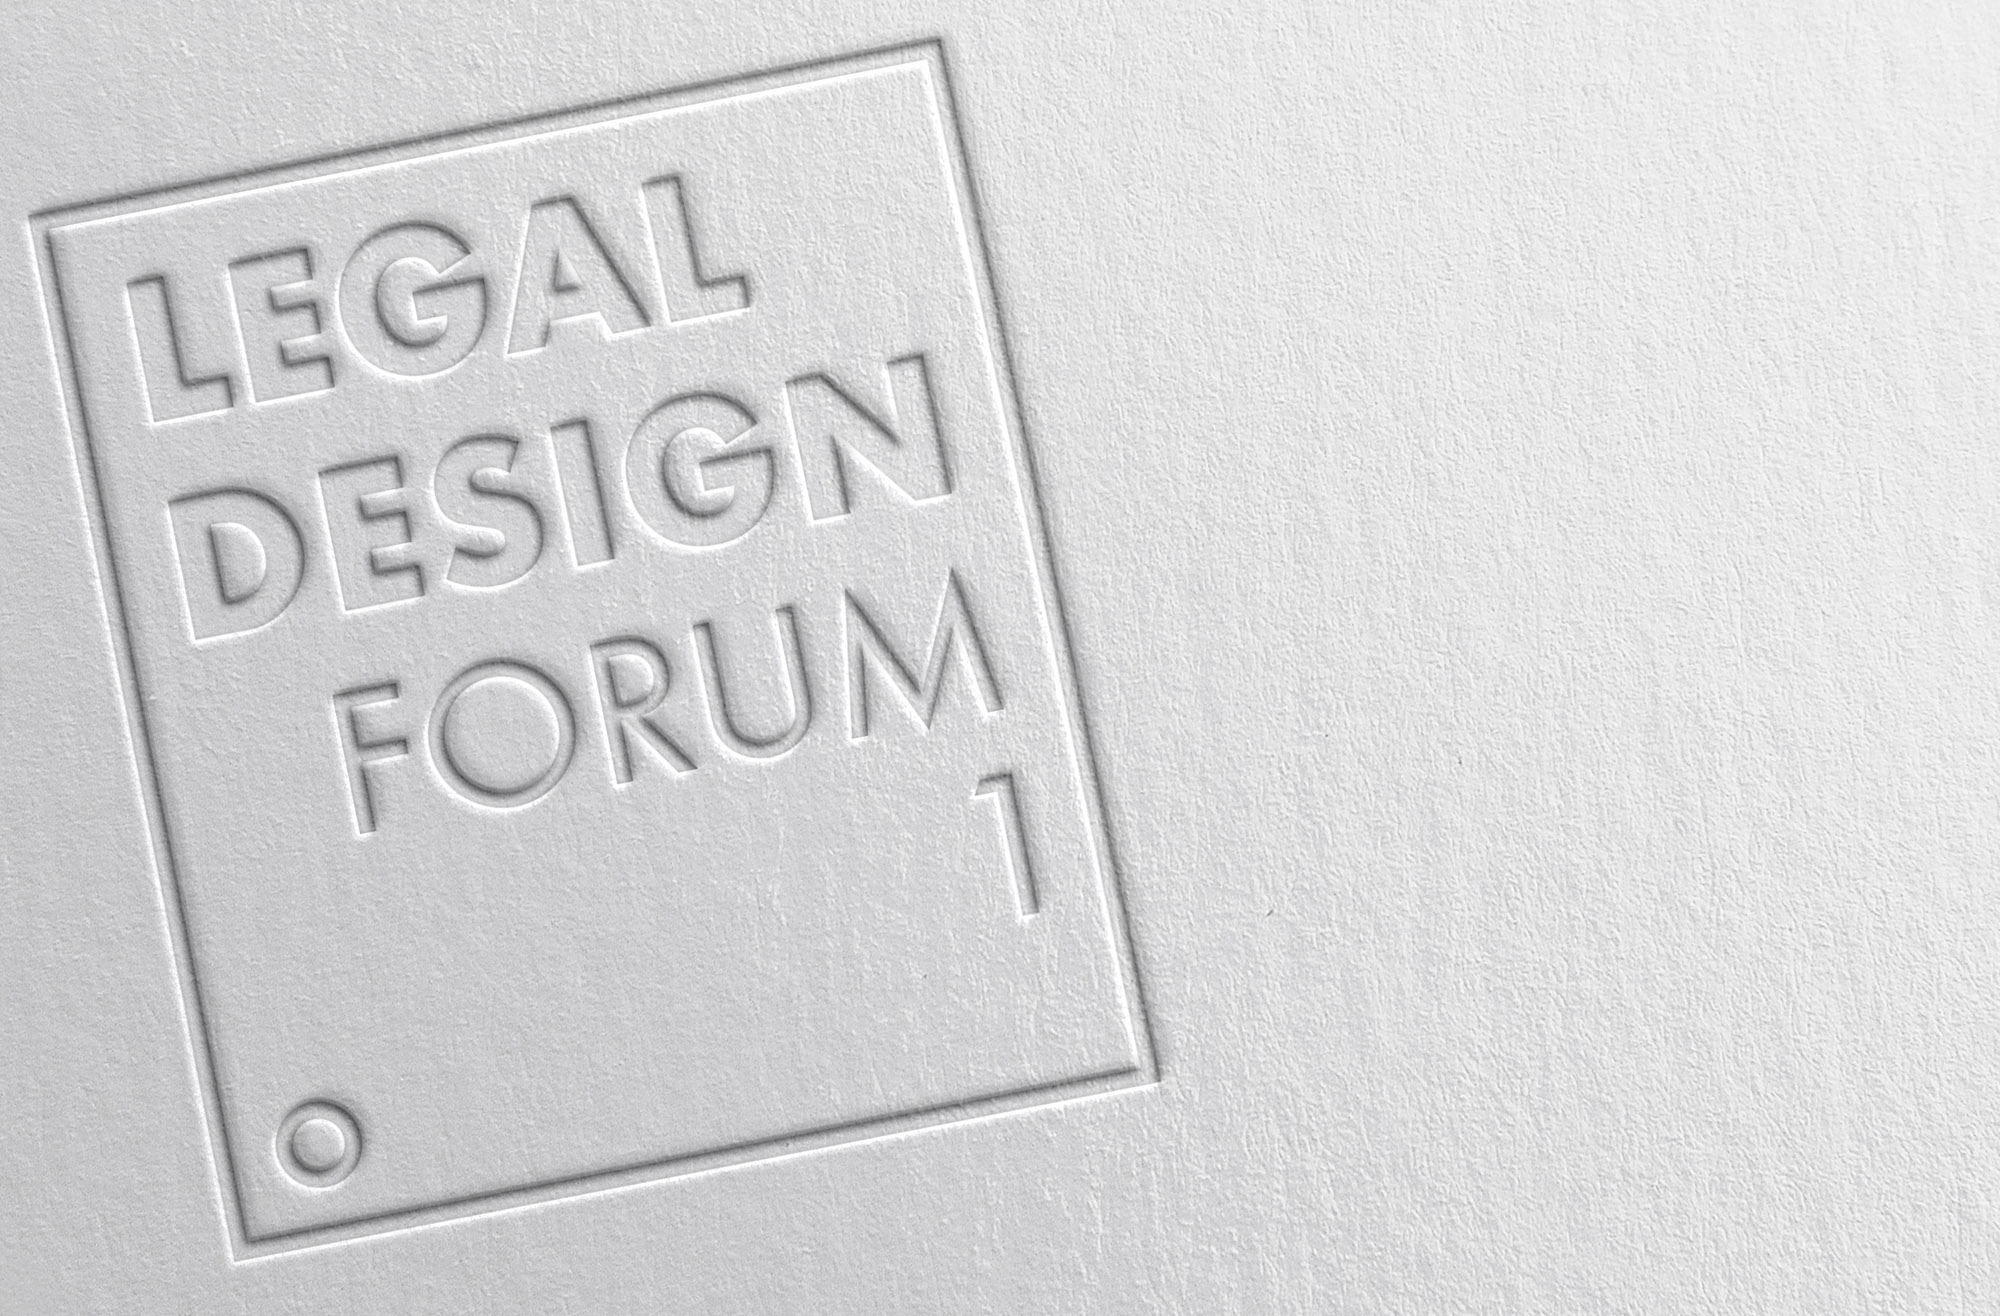 I Forum Legal Design